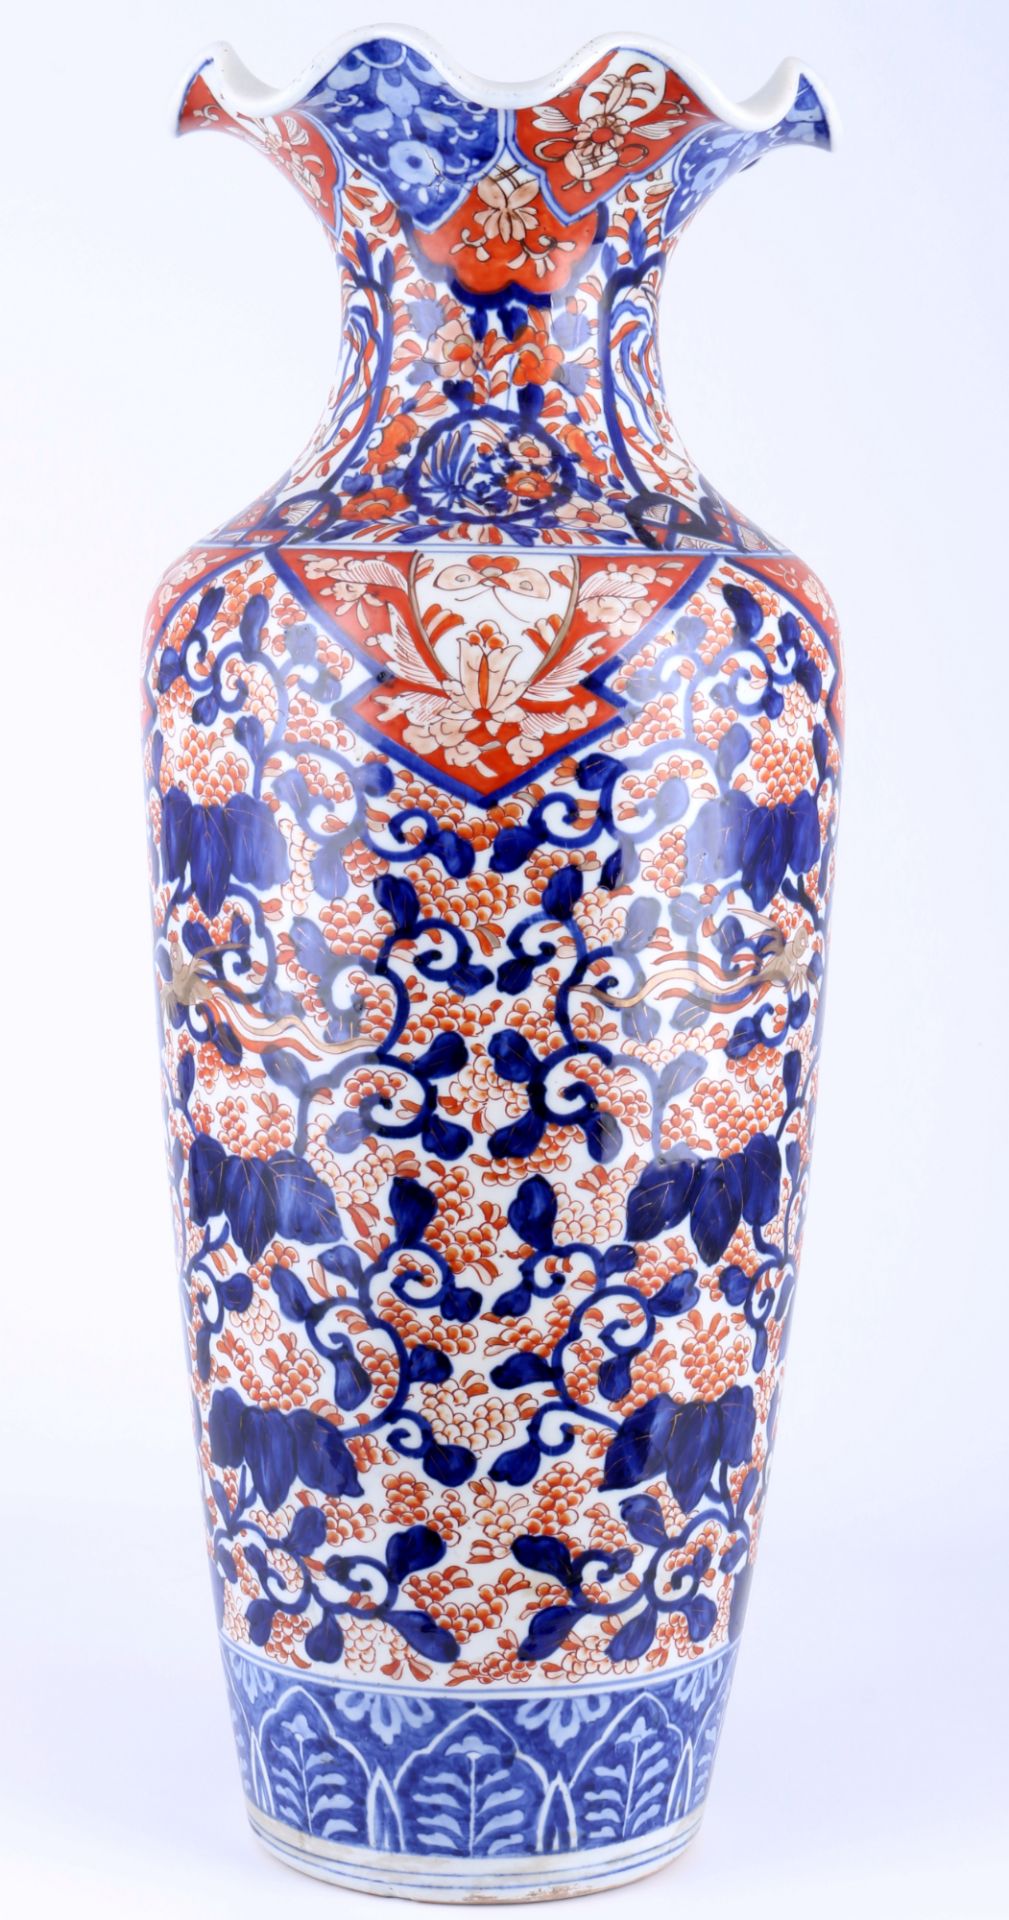 Japan Imari große Bodenvase Meiji-Dynasty 19. Jahrhundert, japanese floor vase 19th century,